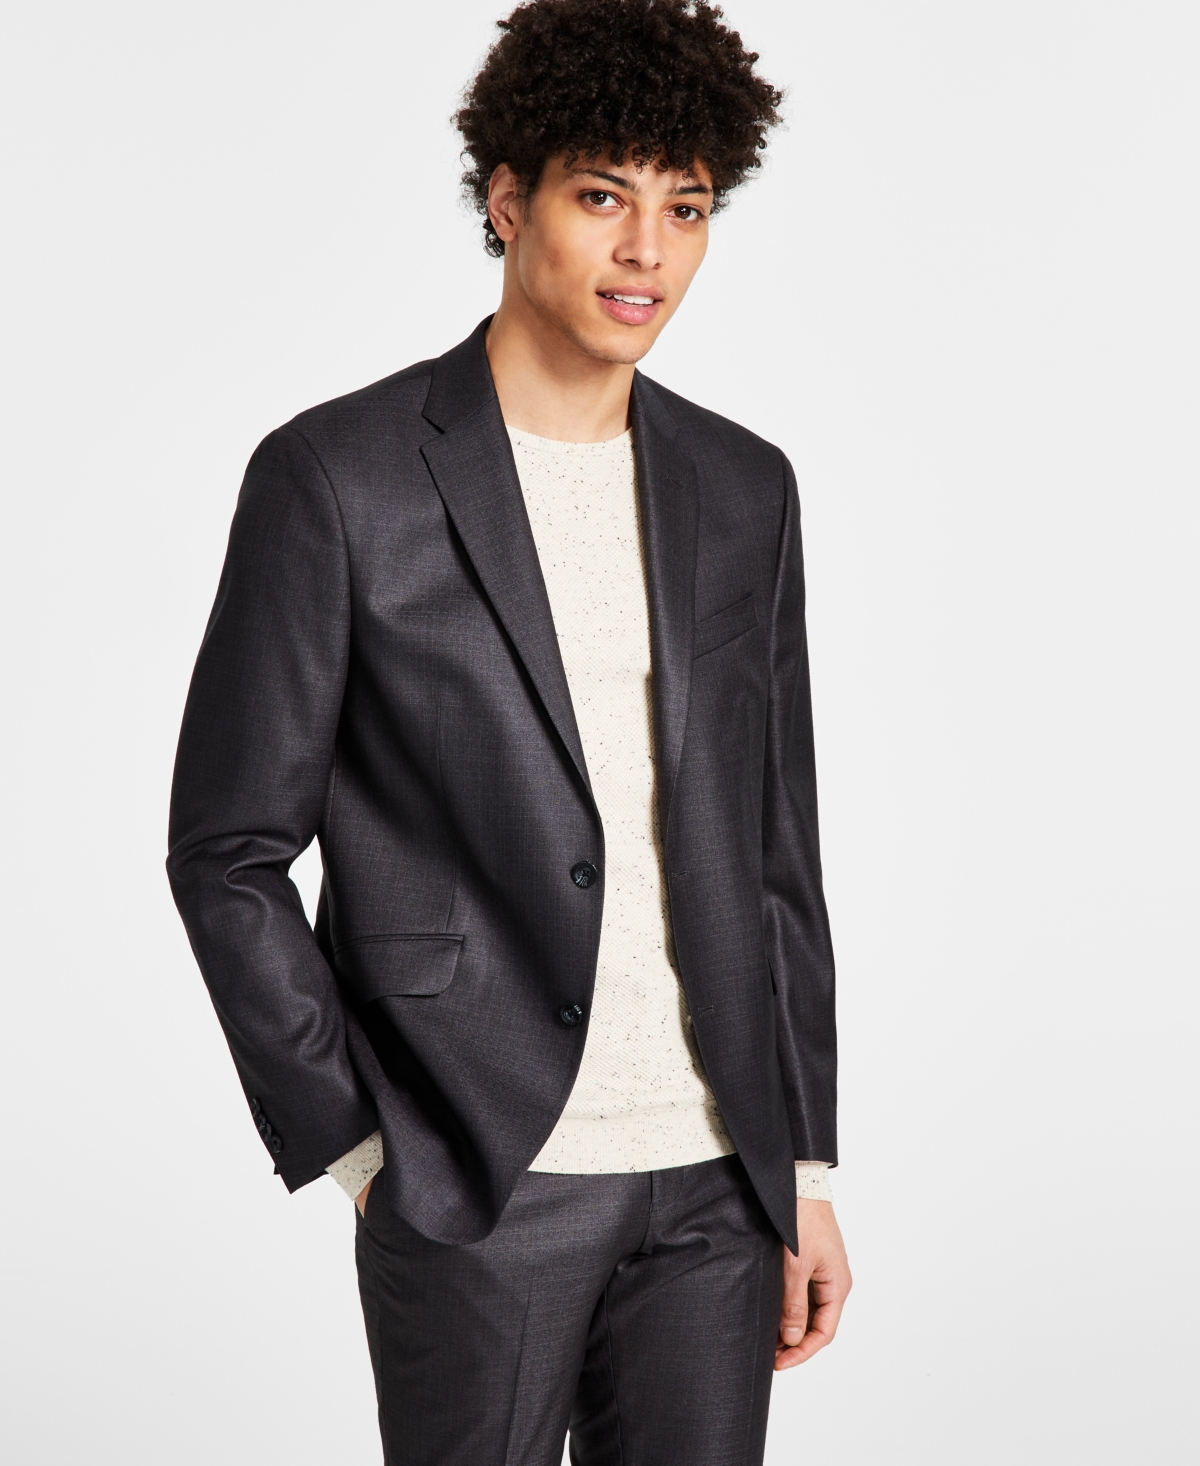 Kenneth Cole Reaction Men's Techni-Cole Suit Separate Slim-Fit Suit Jacket